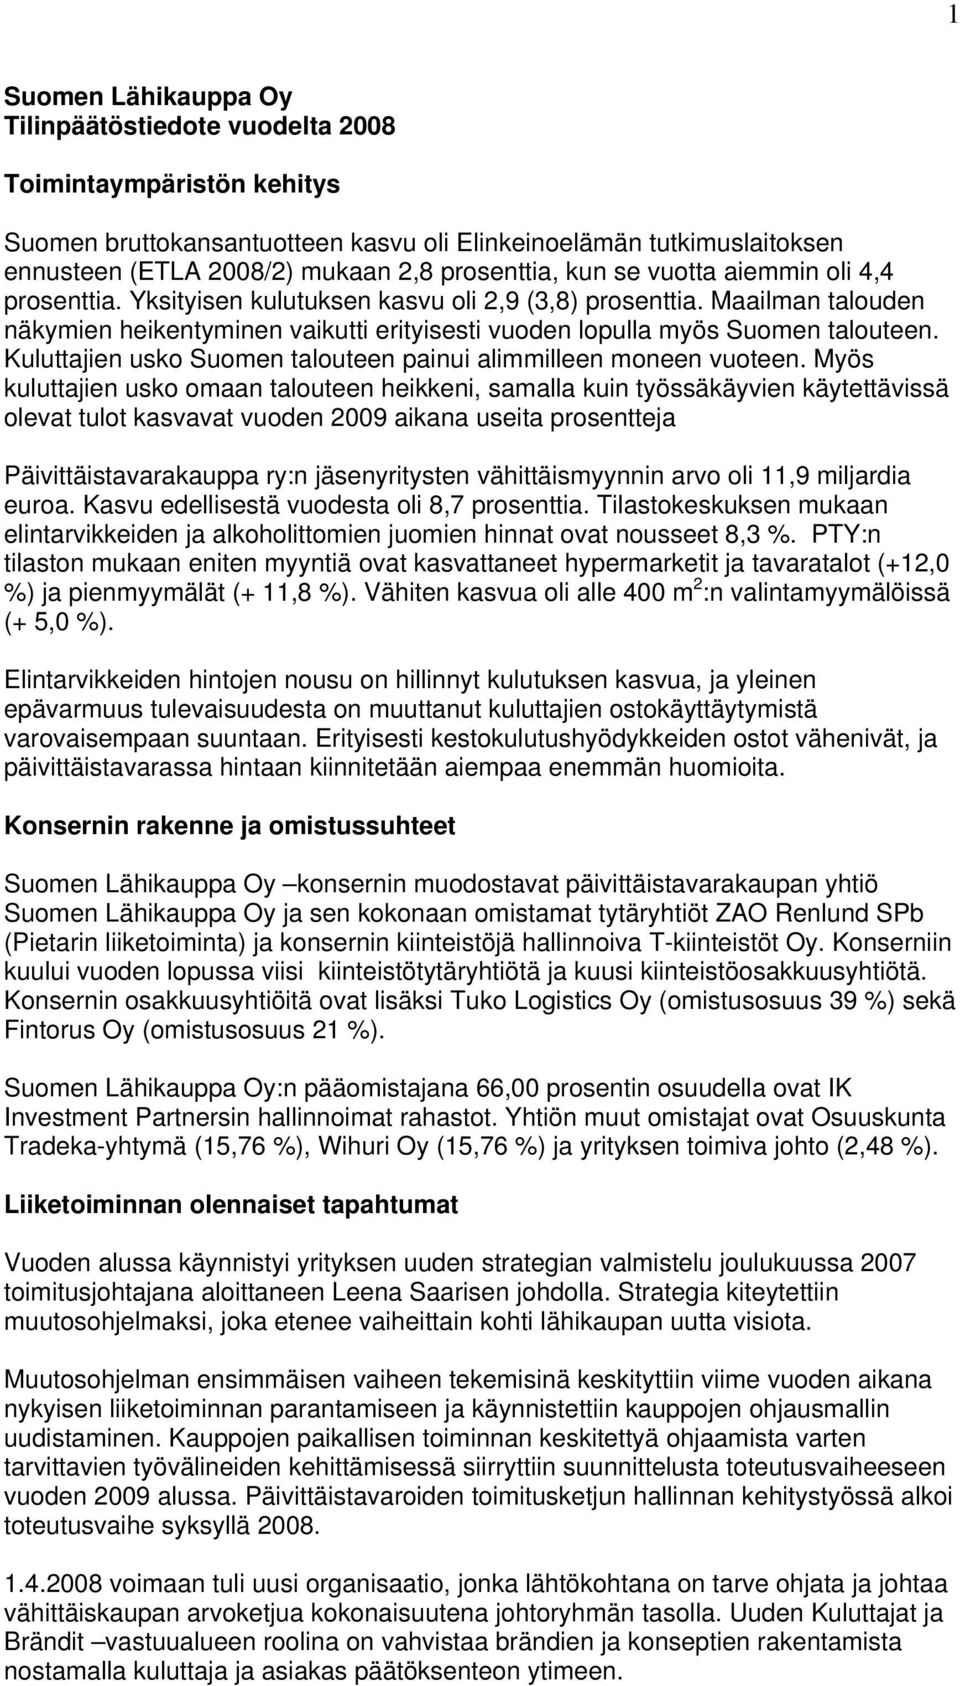 Maailman talouden näkymien heikentyminen vaikutti erityisesti vuoden lopulla myös Suomen talouteen. Kuluttajien usko Suomen talouteen painui alimmilleen moneen vuoteen.